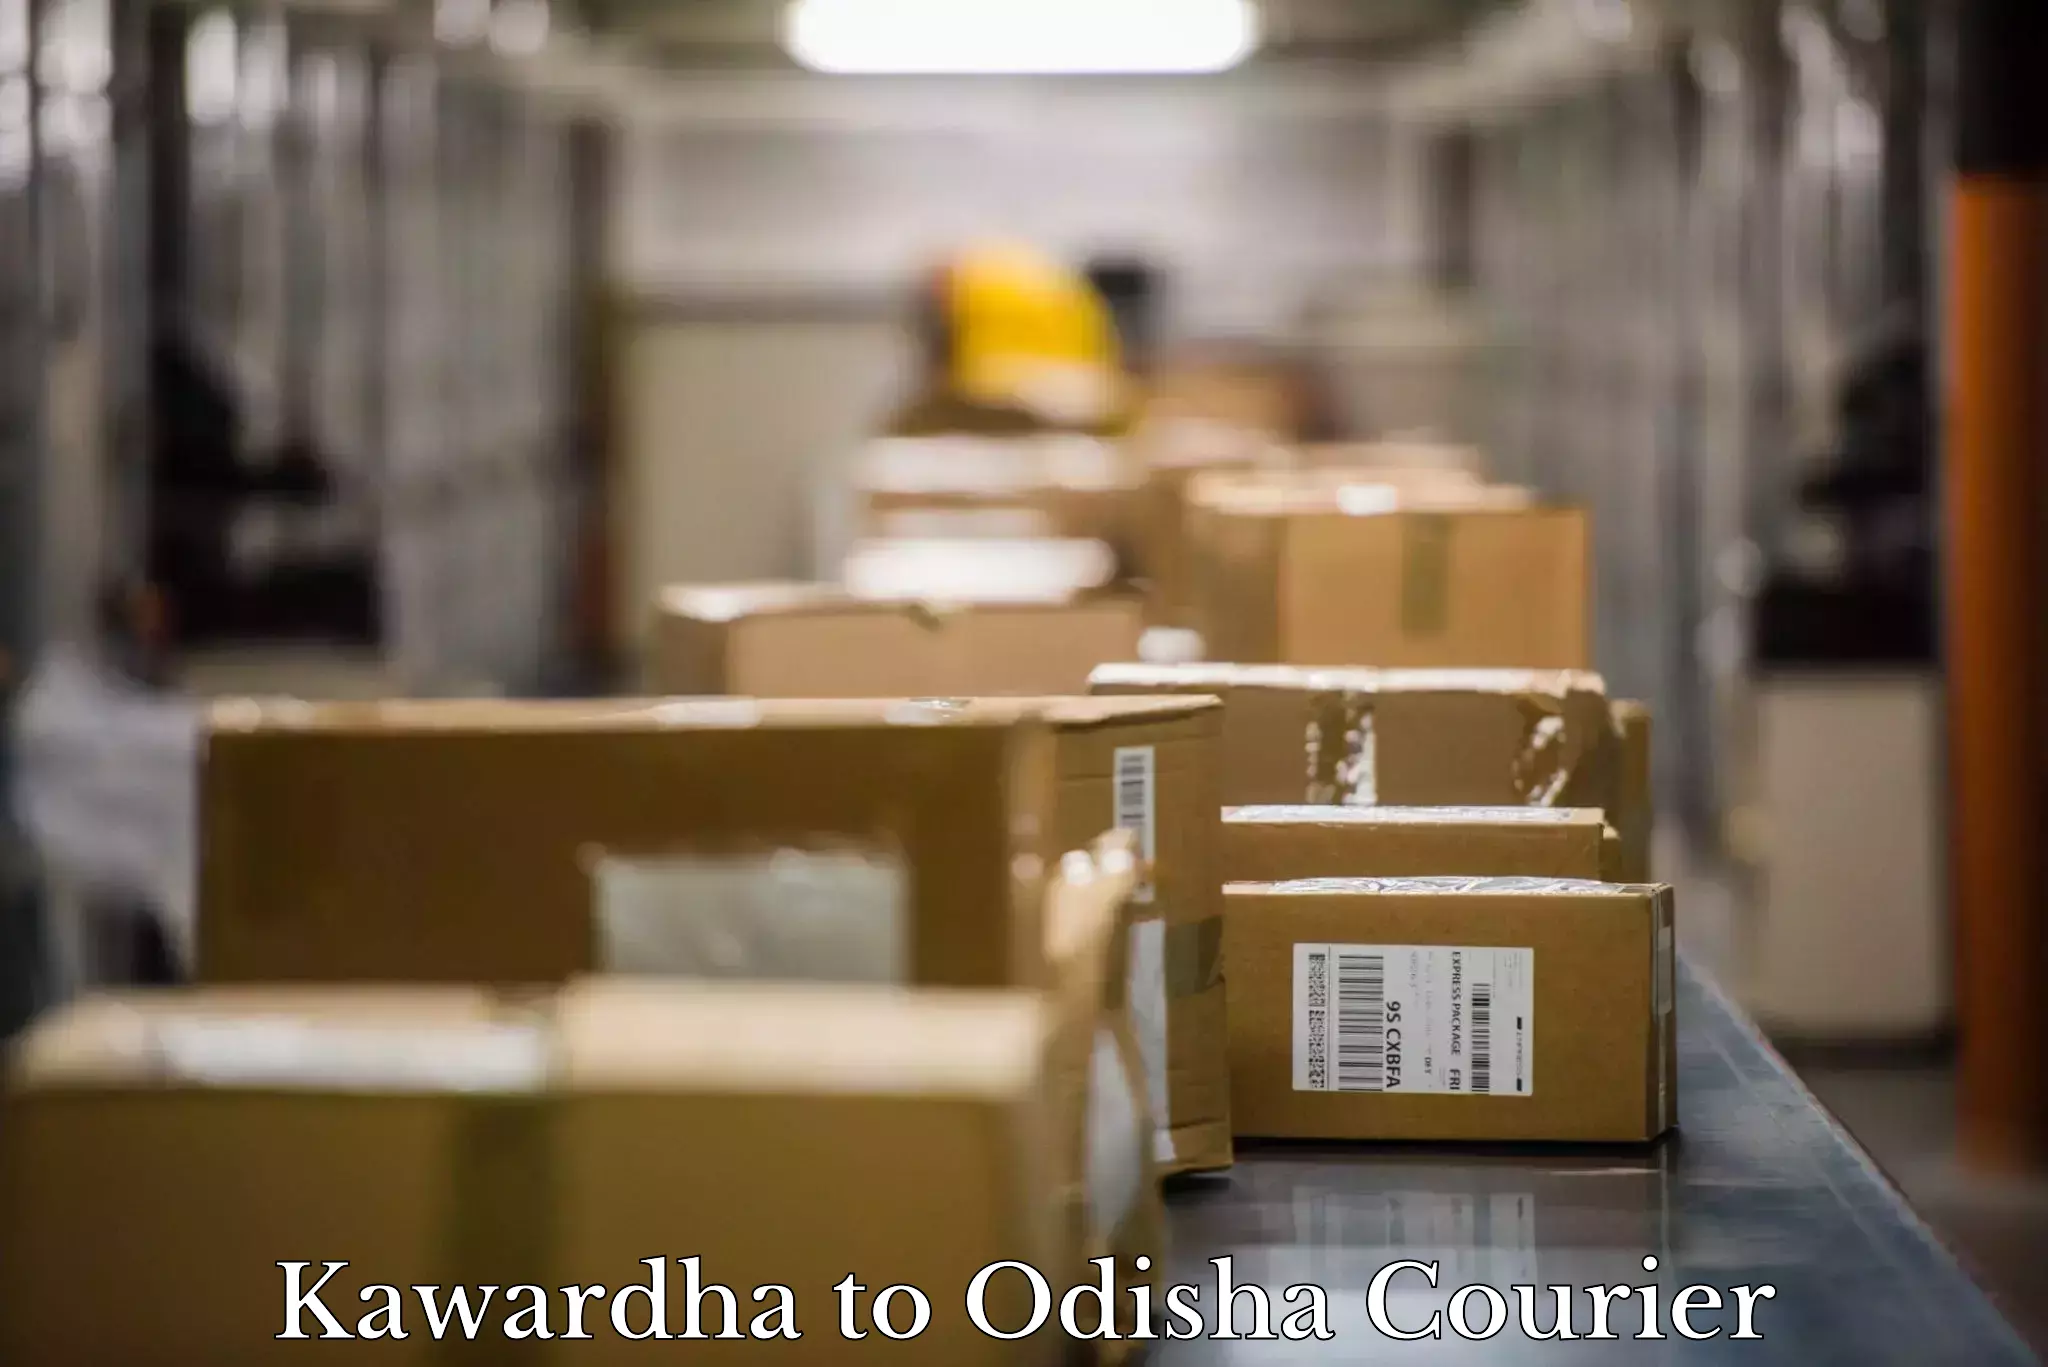 Furniture moving plans Kawardha to Jaraka